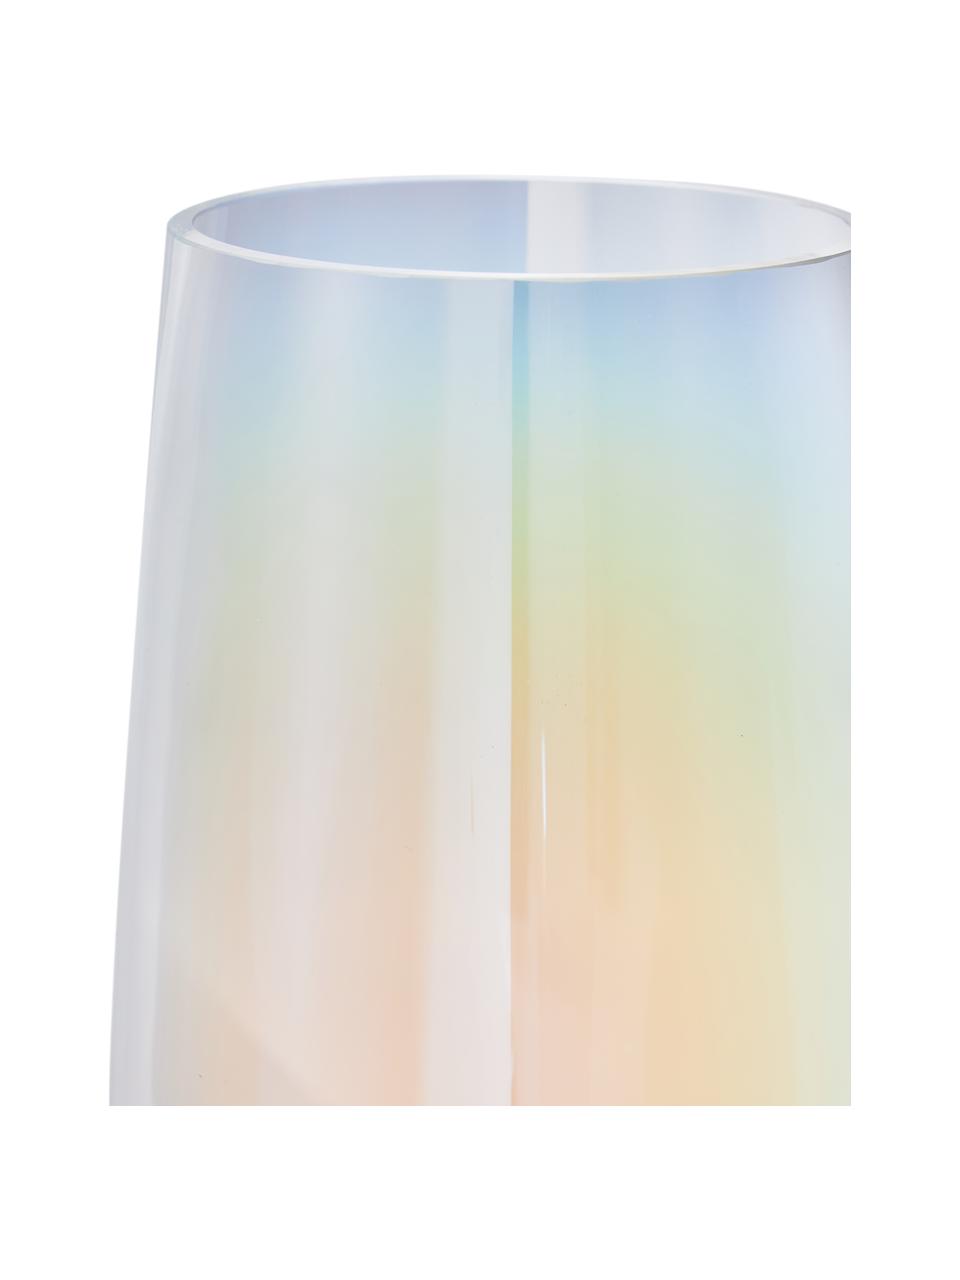 Ručně foukaná skleněná váza Myla, opalizující, Sklo, Transparentní, více barev - opalizující, Ø 14 cm, V 28 cm